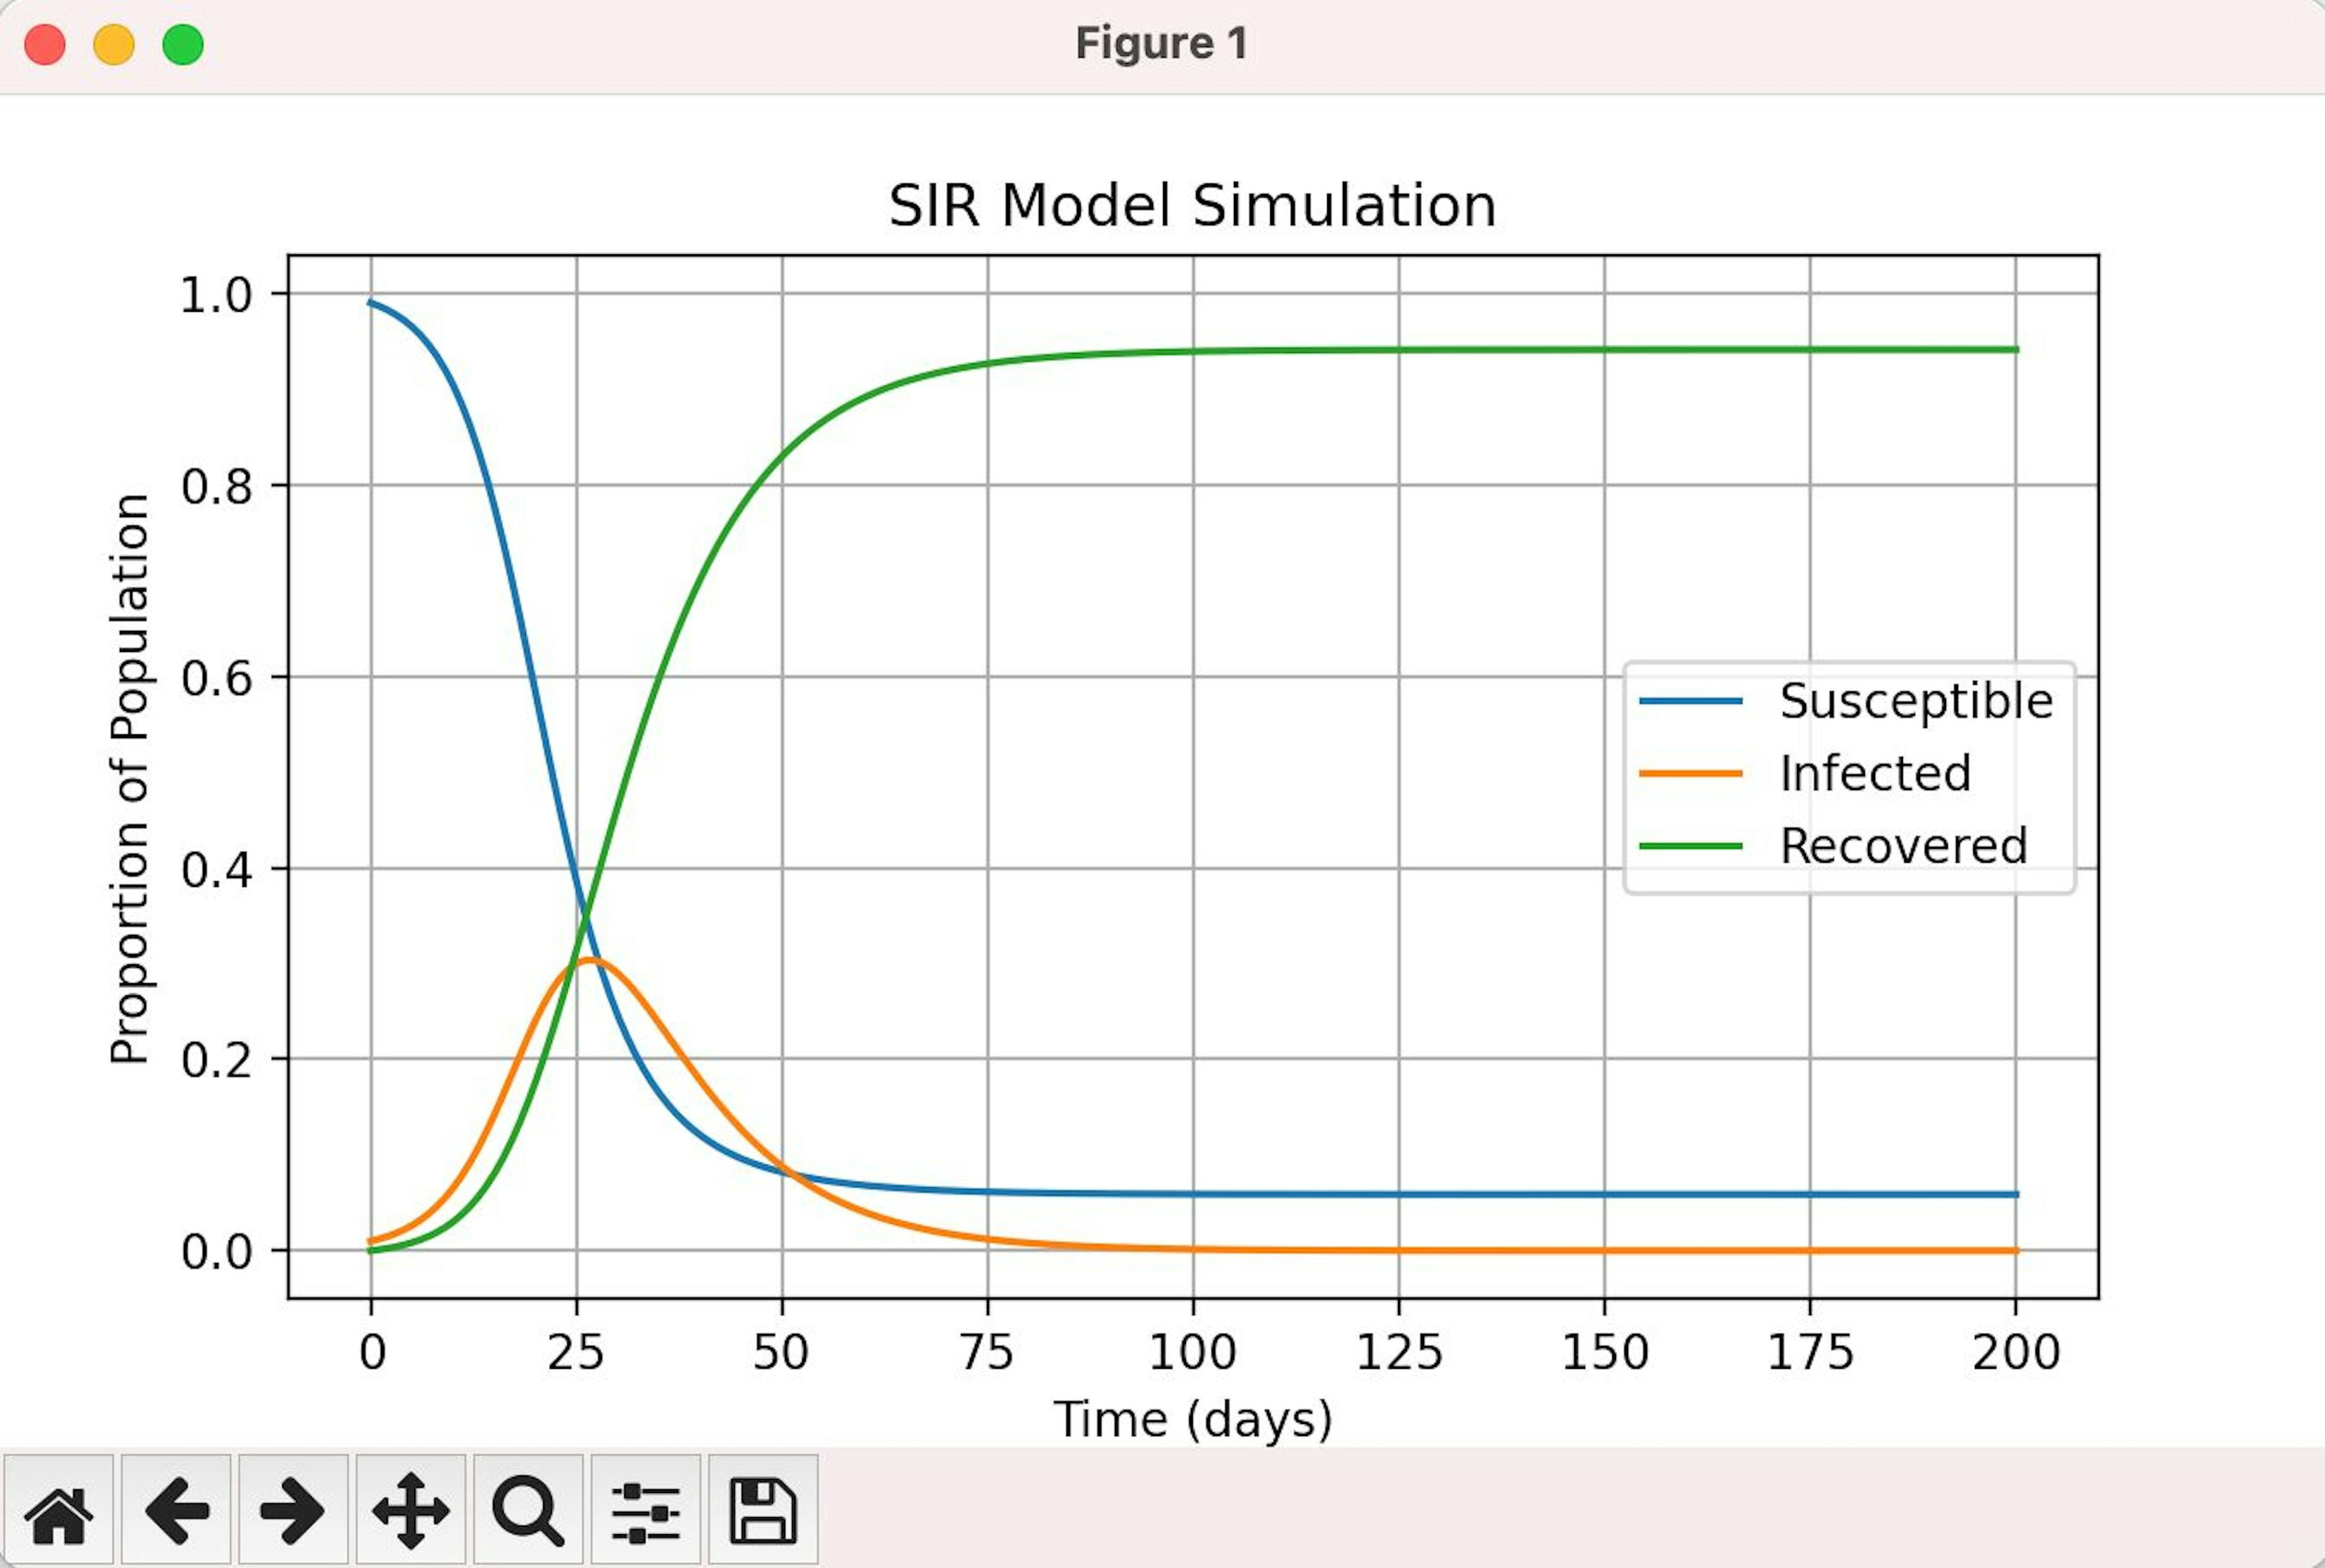 El resultado de nuestra simulación muestra una susceptibilidad reducida y una tasa de infección, con altas tasas de recuperación.